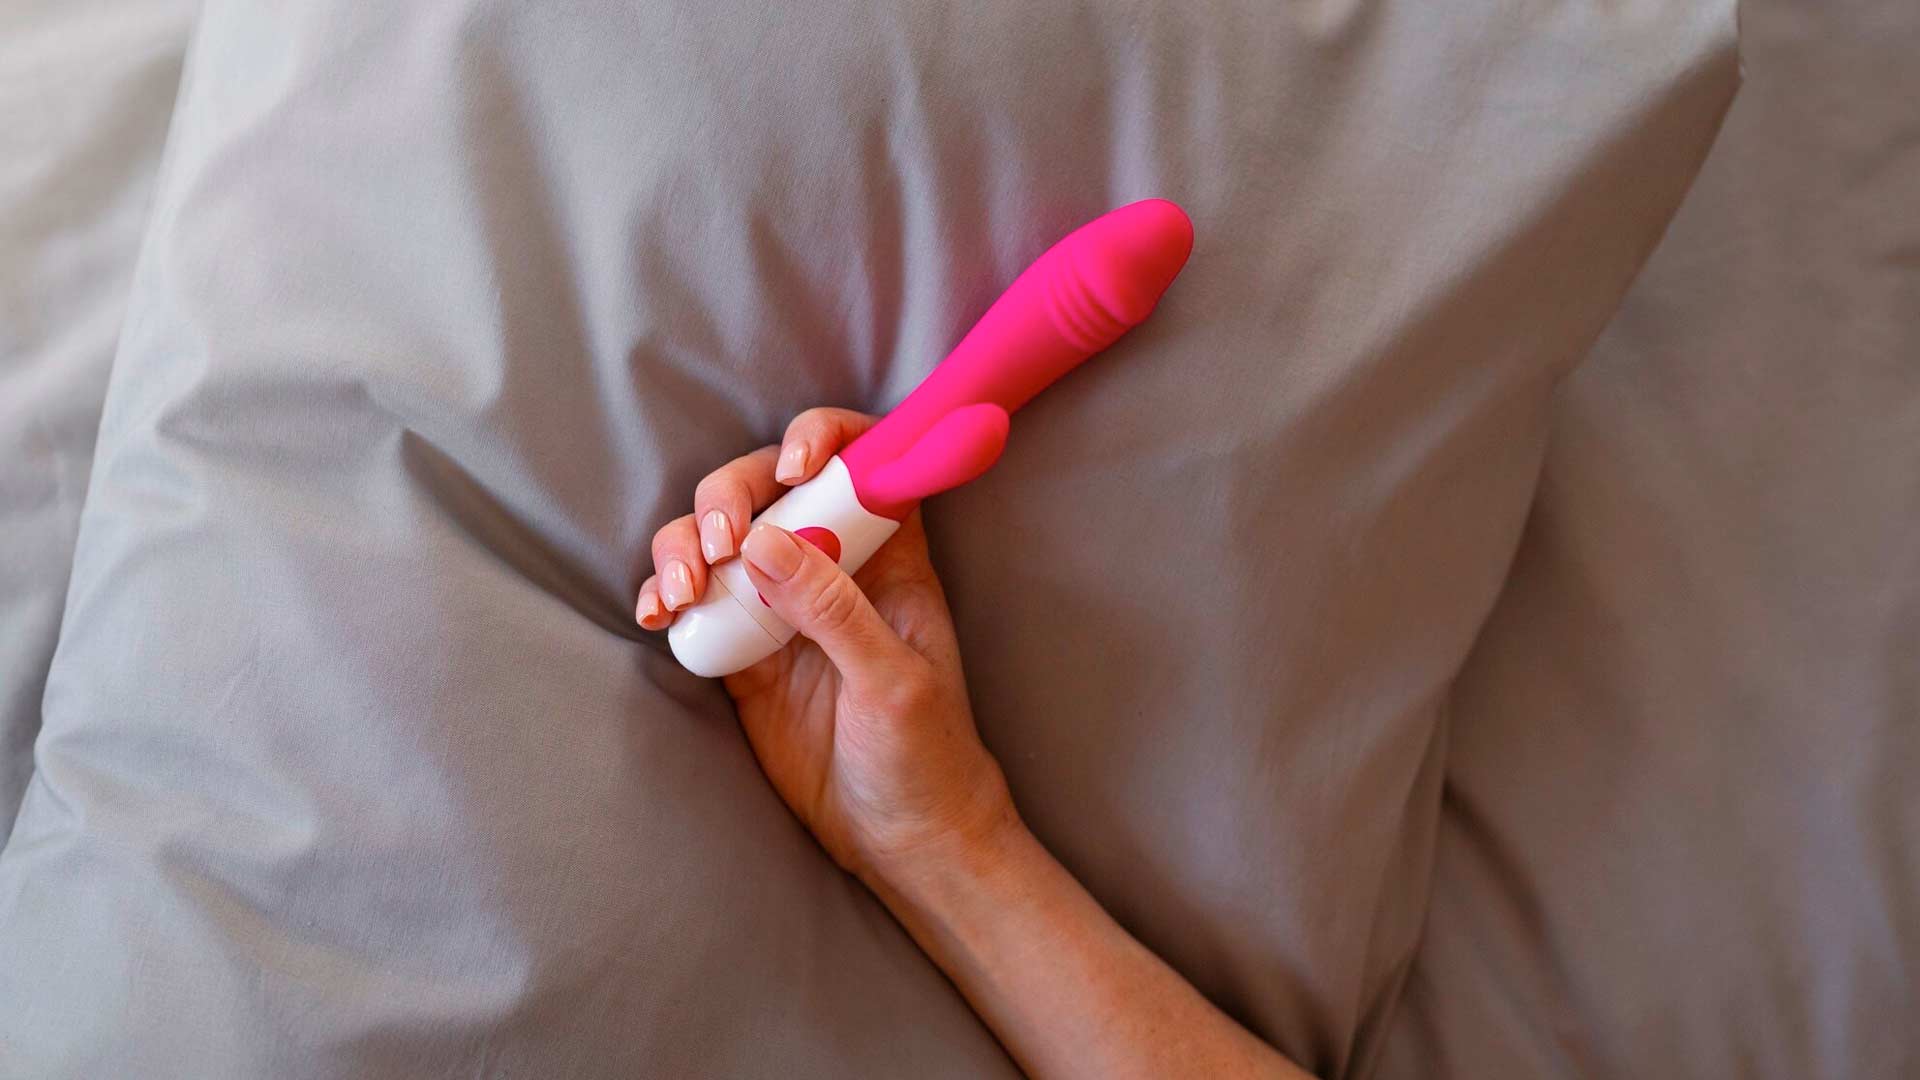 los-mejores-juguetes-sexuales-para-mujeres-candy-dreams